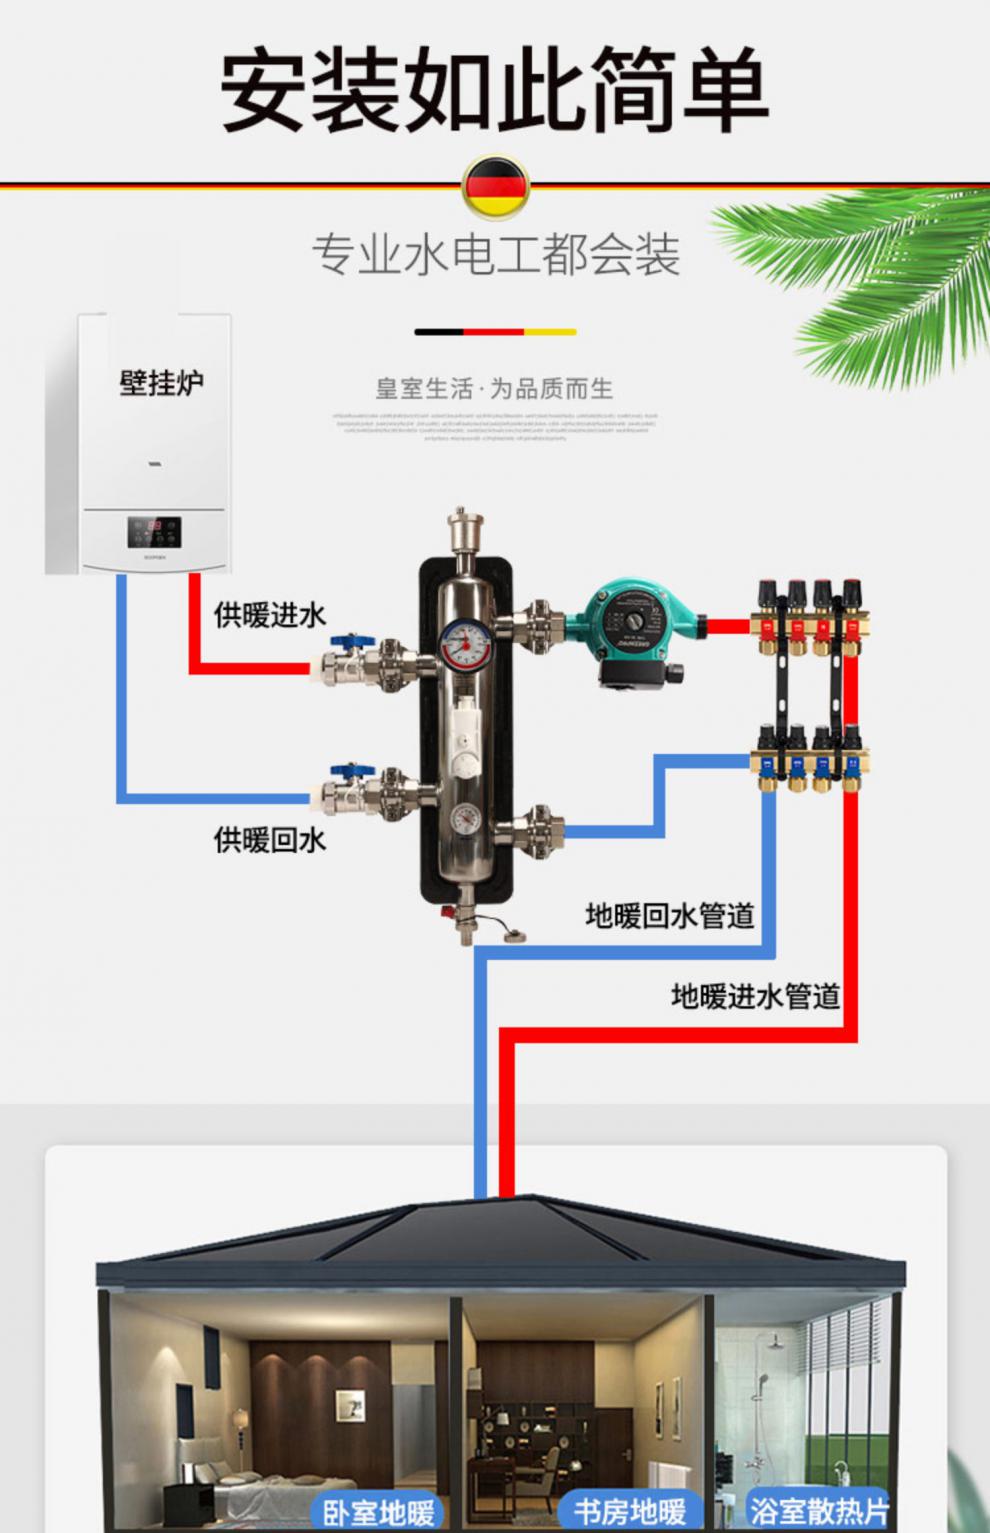 壁挂炉水泵结构示意图图片